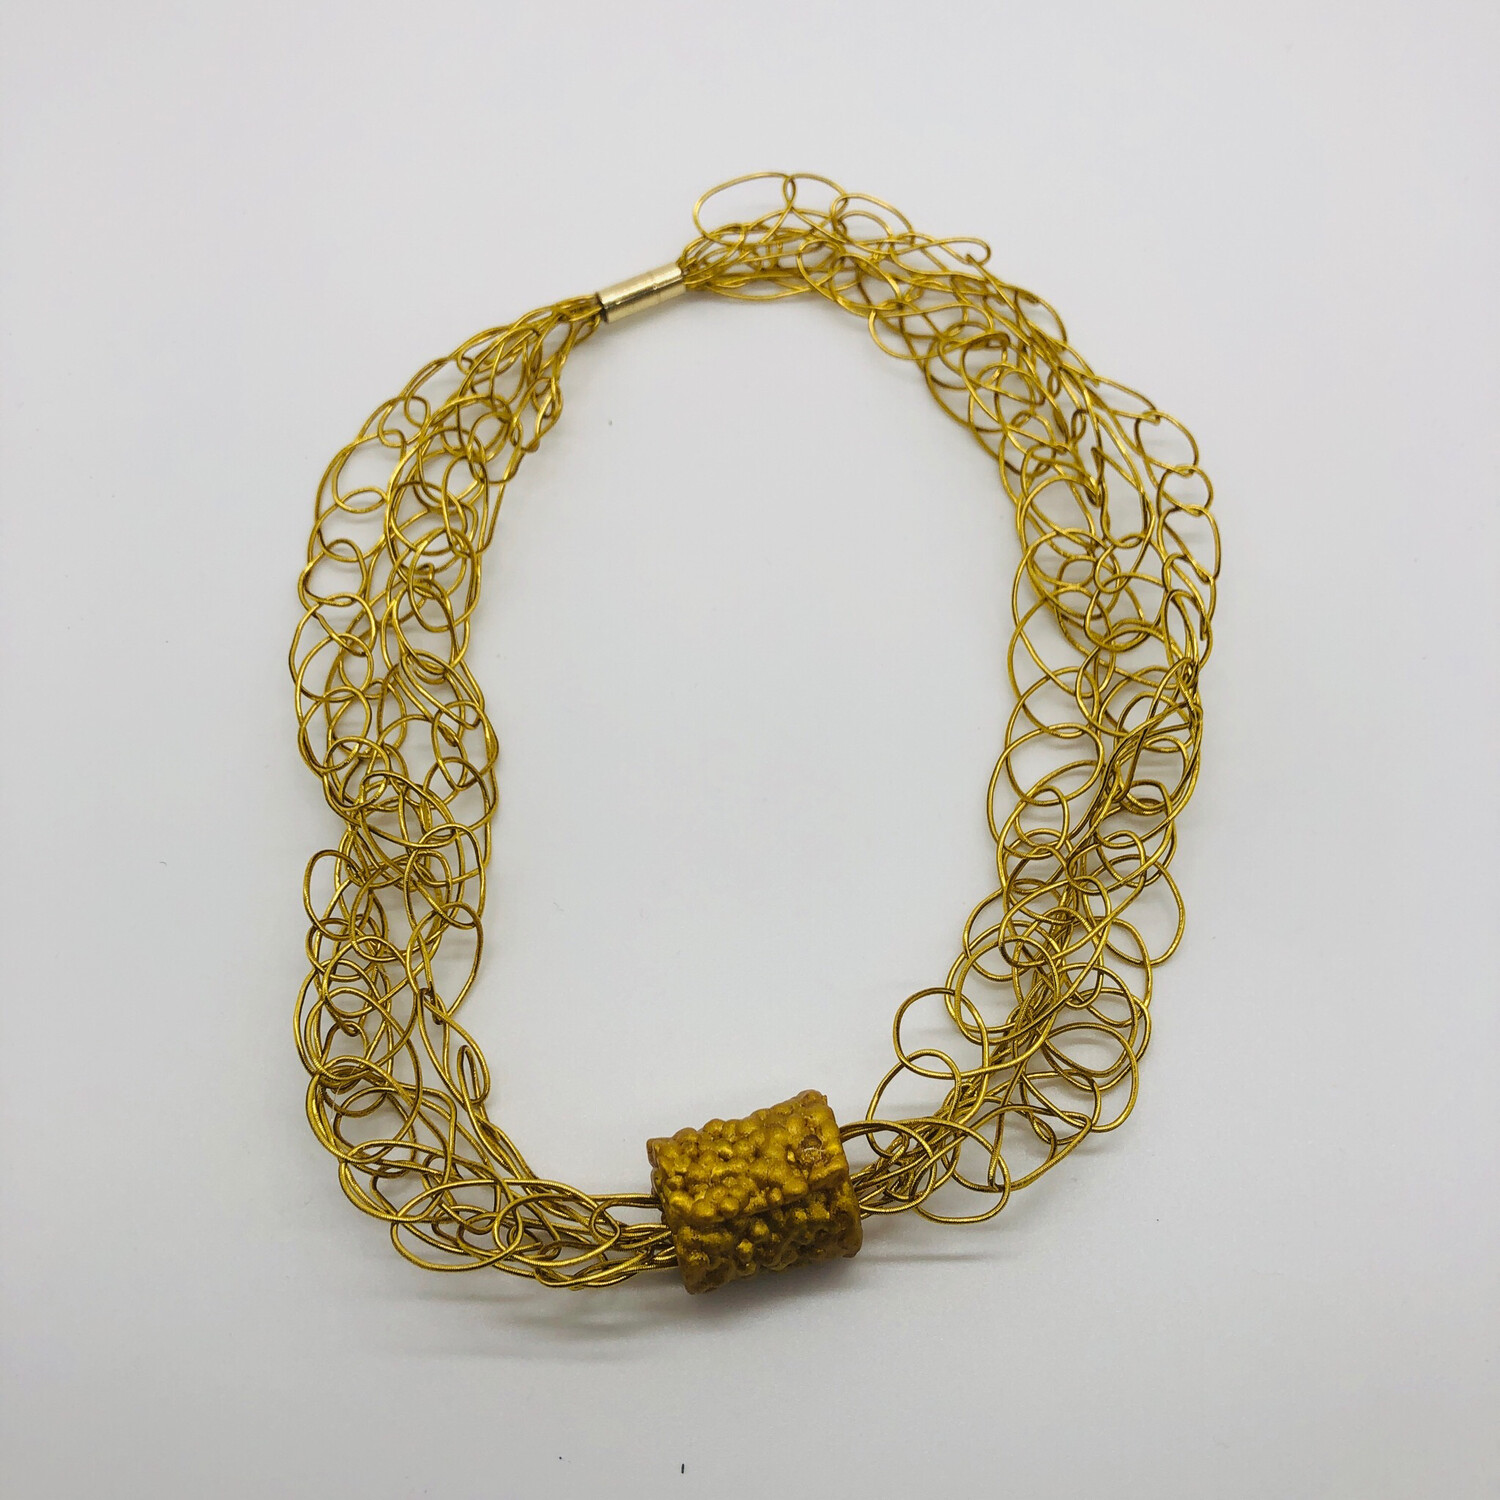 Halskette / Armband gold „gestrickt“ 4-fach - kombinierbar mit „Perle“ oder solo zu tragen